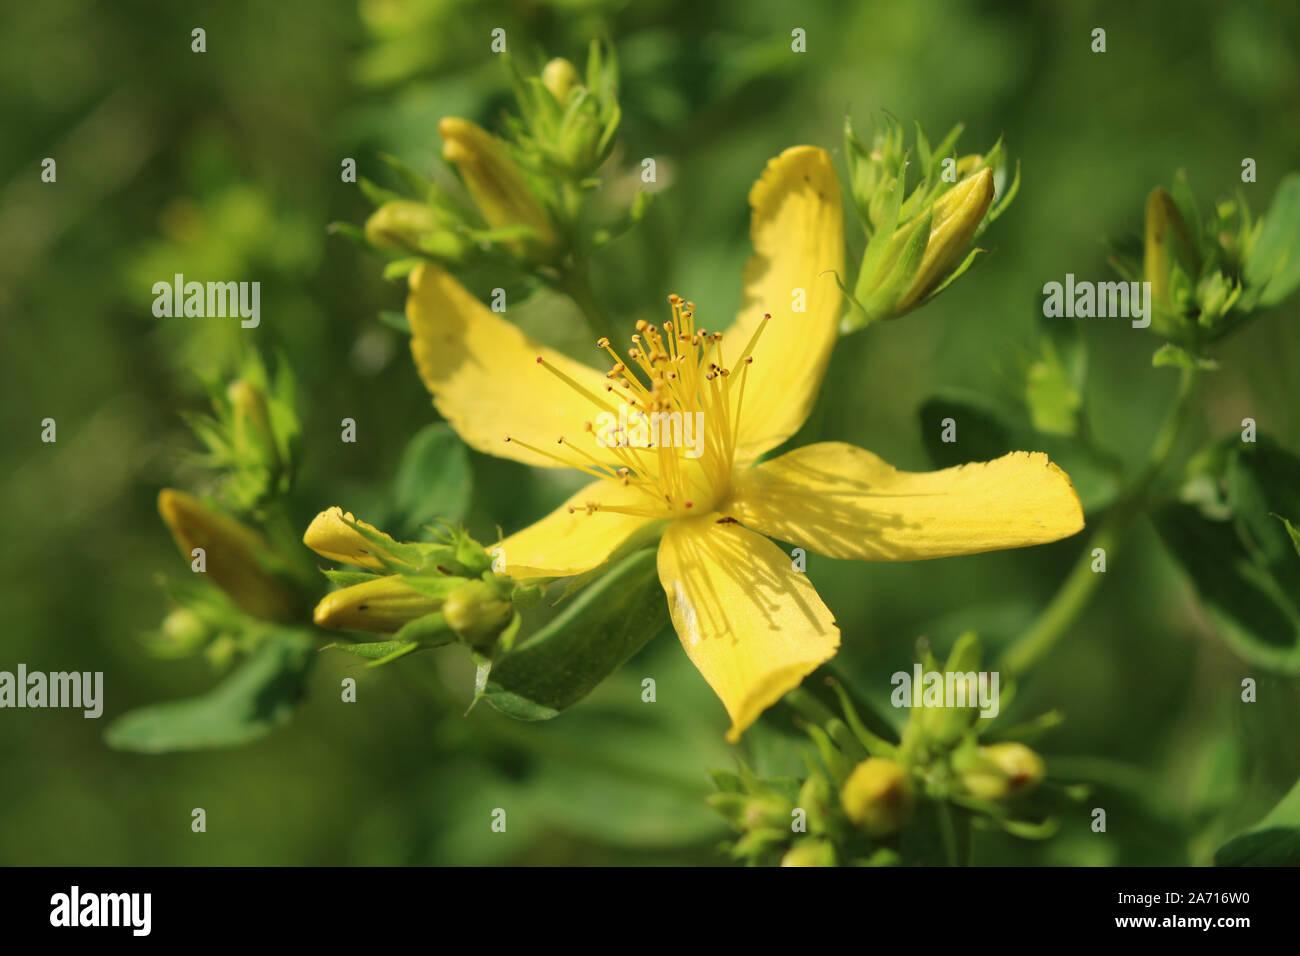 Chiudere l immagine dei fiori gialli di Hypericum perforatum, anche noto come erba di San Giovanni. All'aperto in un ambiente naturale. Foto Stock